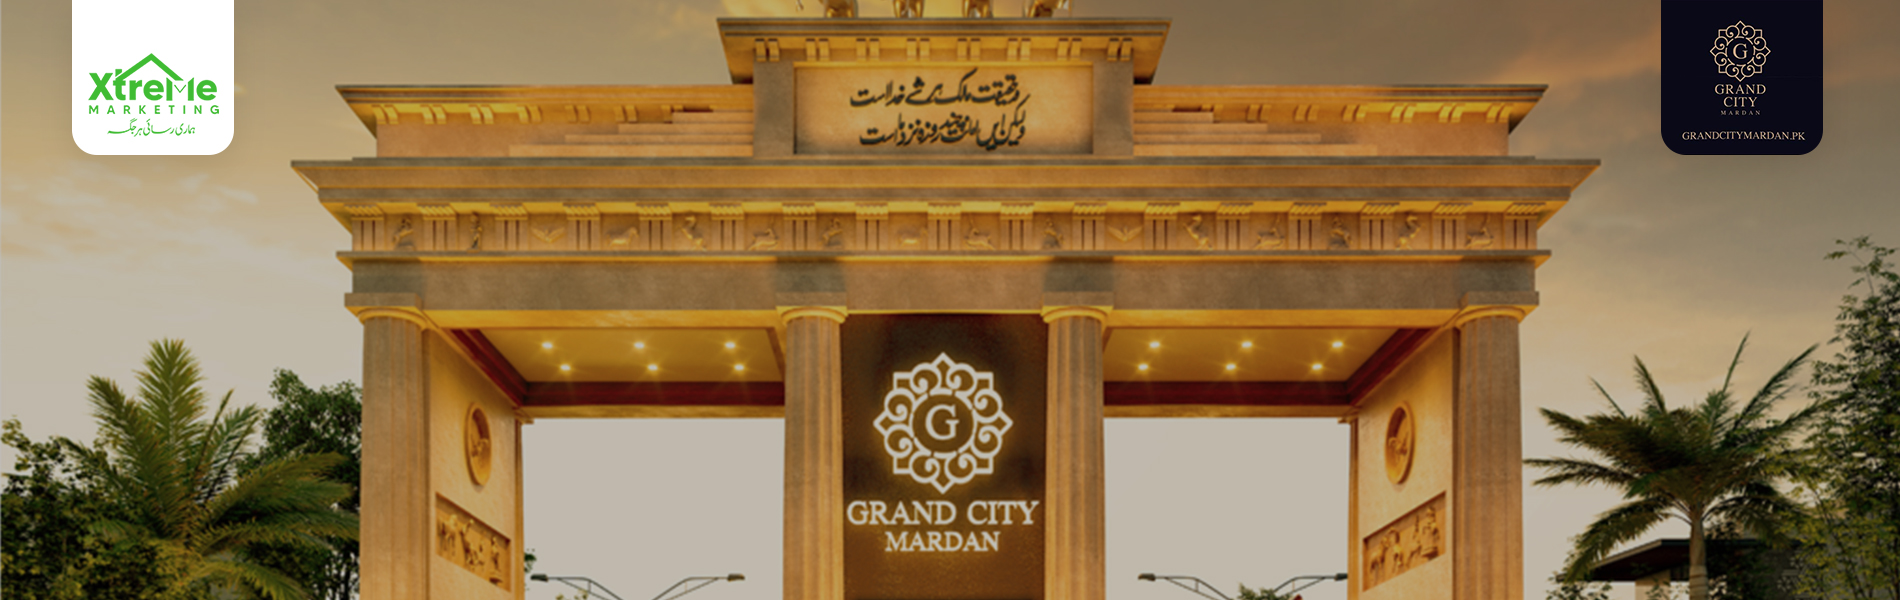 Grand City Mardan gate.jpg